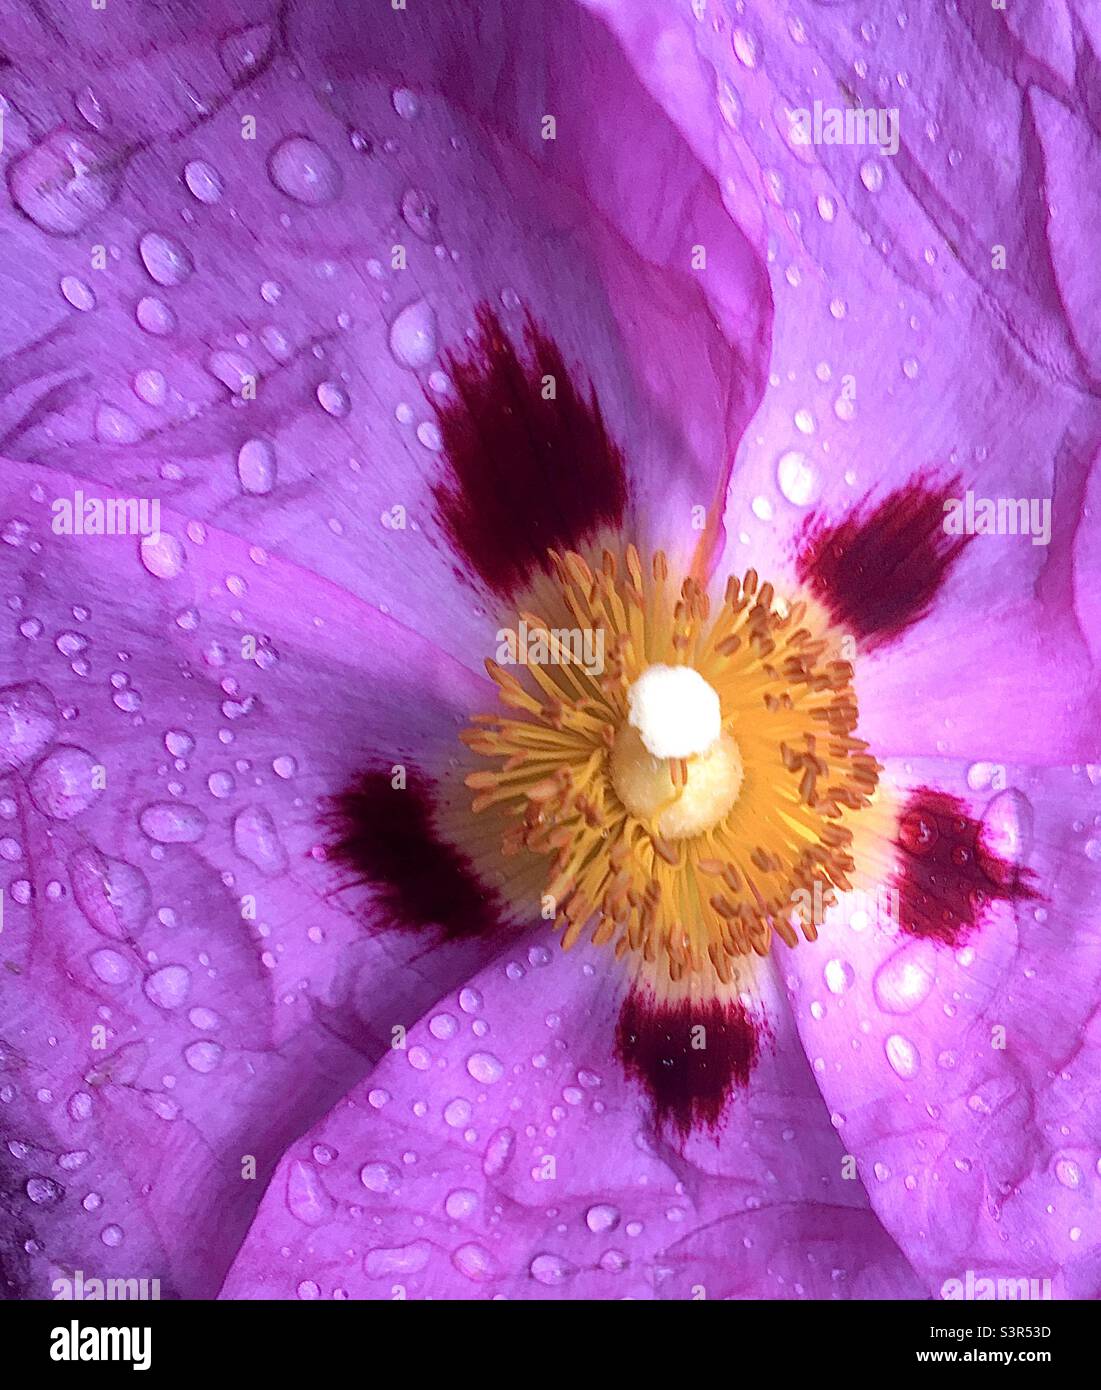 abstrait, violet, blanc, jaune, nature, beauté, gouttes de pluie, jardin, fleur Banque D'Images